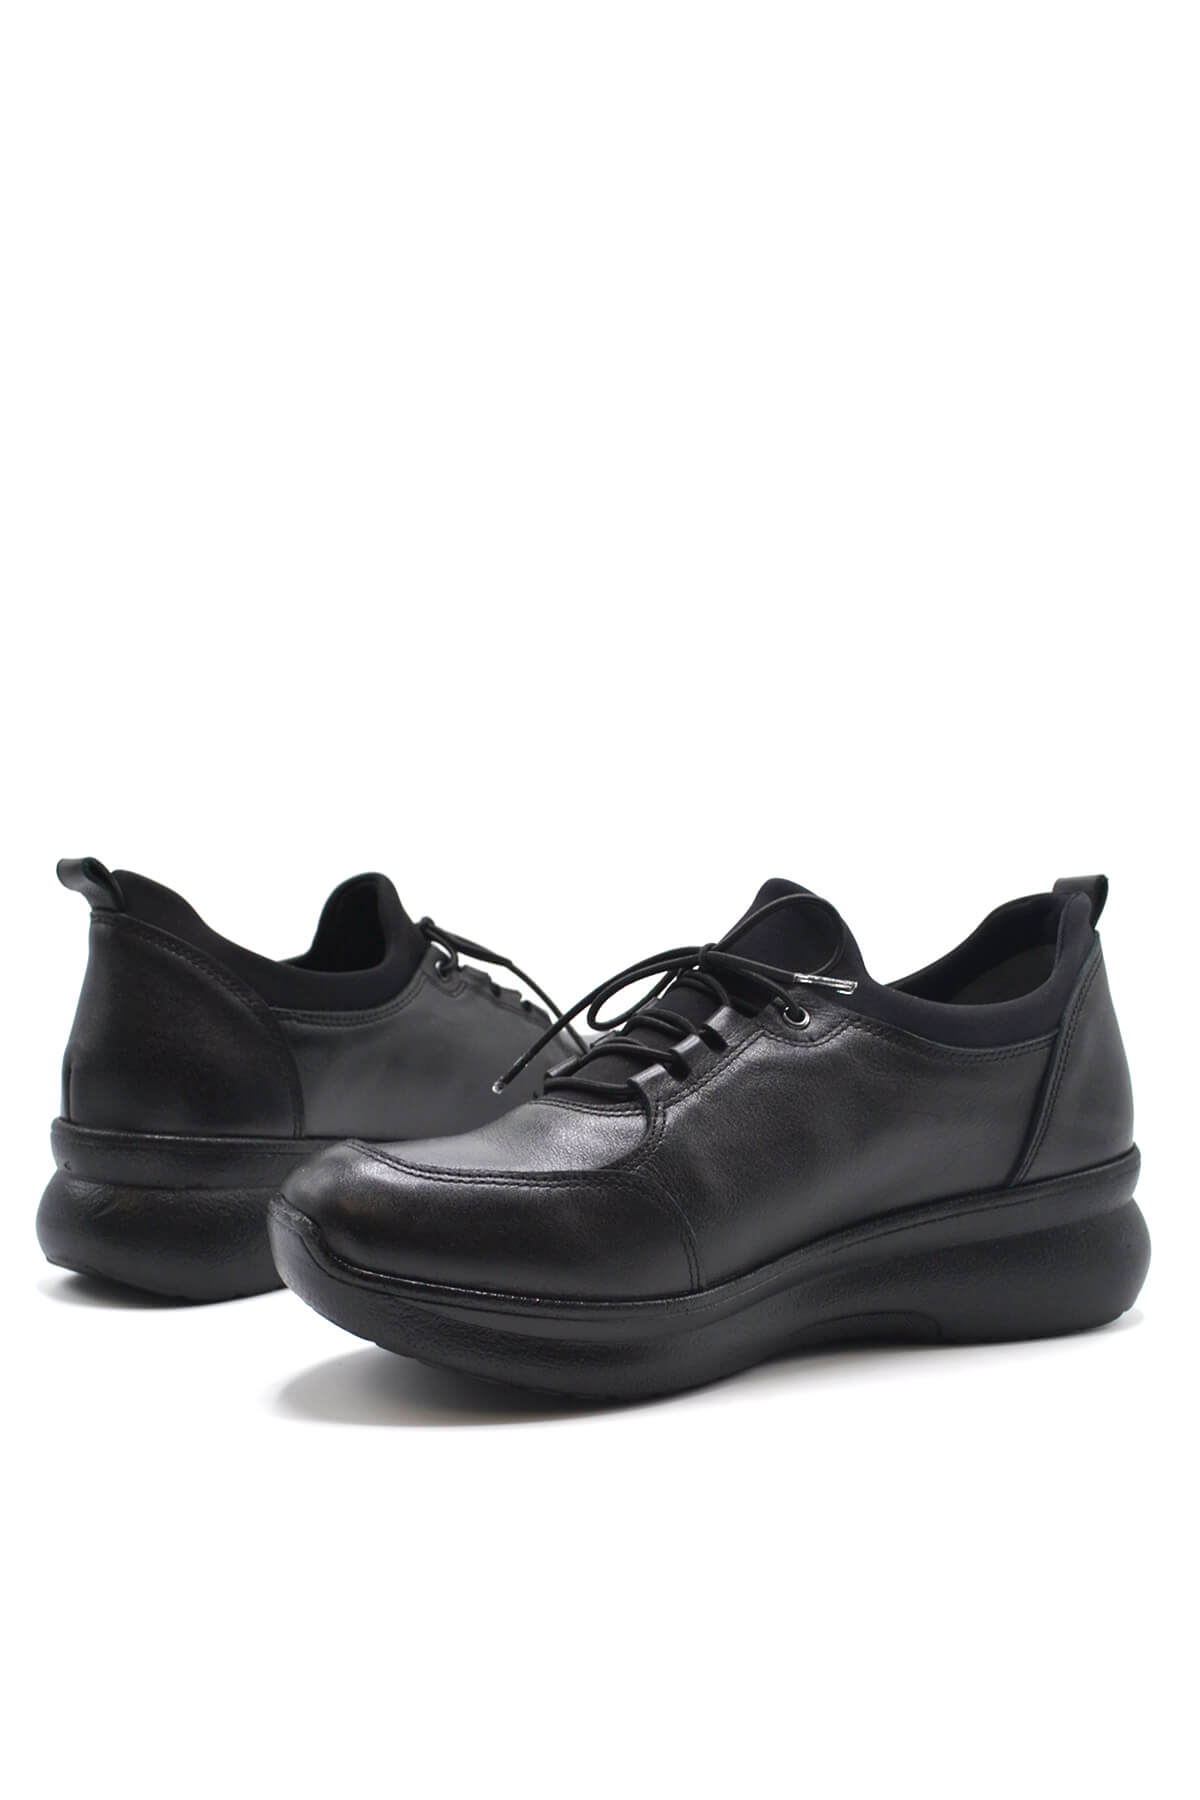 Kadın Comfort Deri Ayakkabı Siyah 1901707K